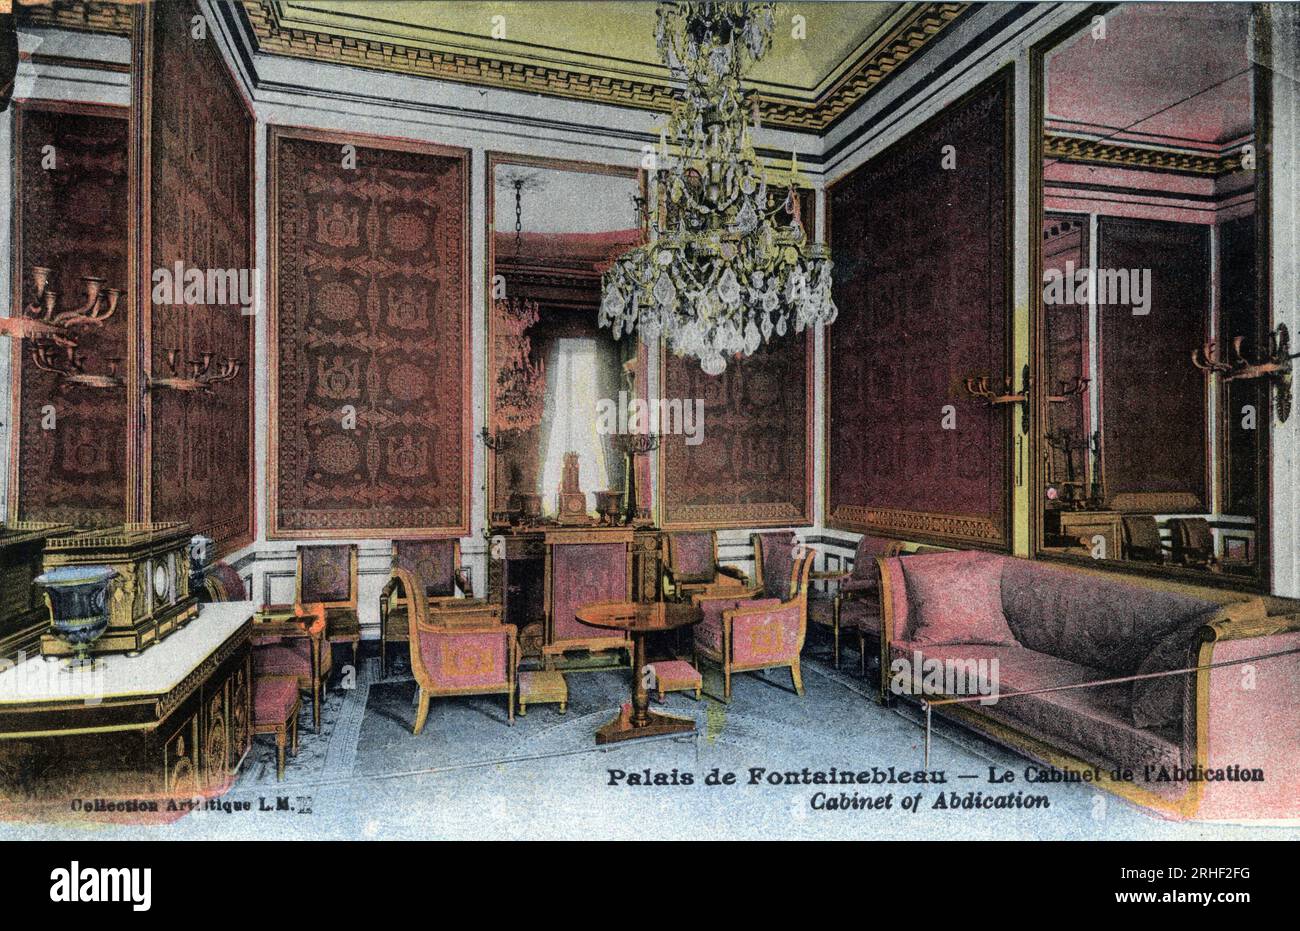 Chateau de Fontainebleau : le cabinet de l'abdication, lieu ou l'empereur Napoleon Ier (1769-1821) aurait signe son abdication le 4 avril 1814 - Carte postale fin 19eme-debut 20eme siecle Stock Photo